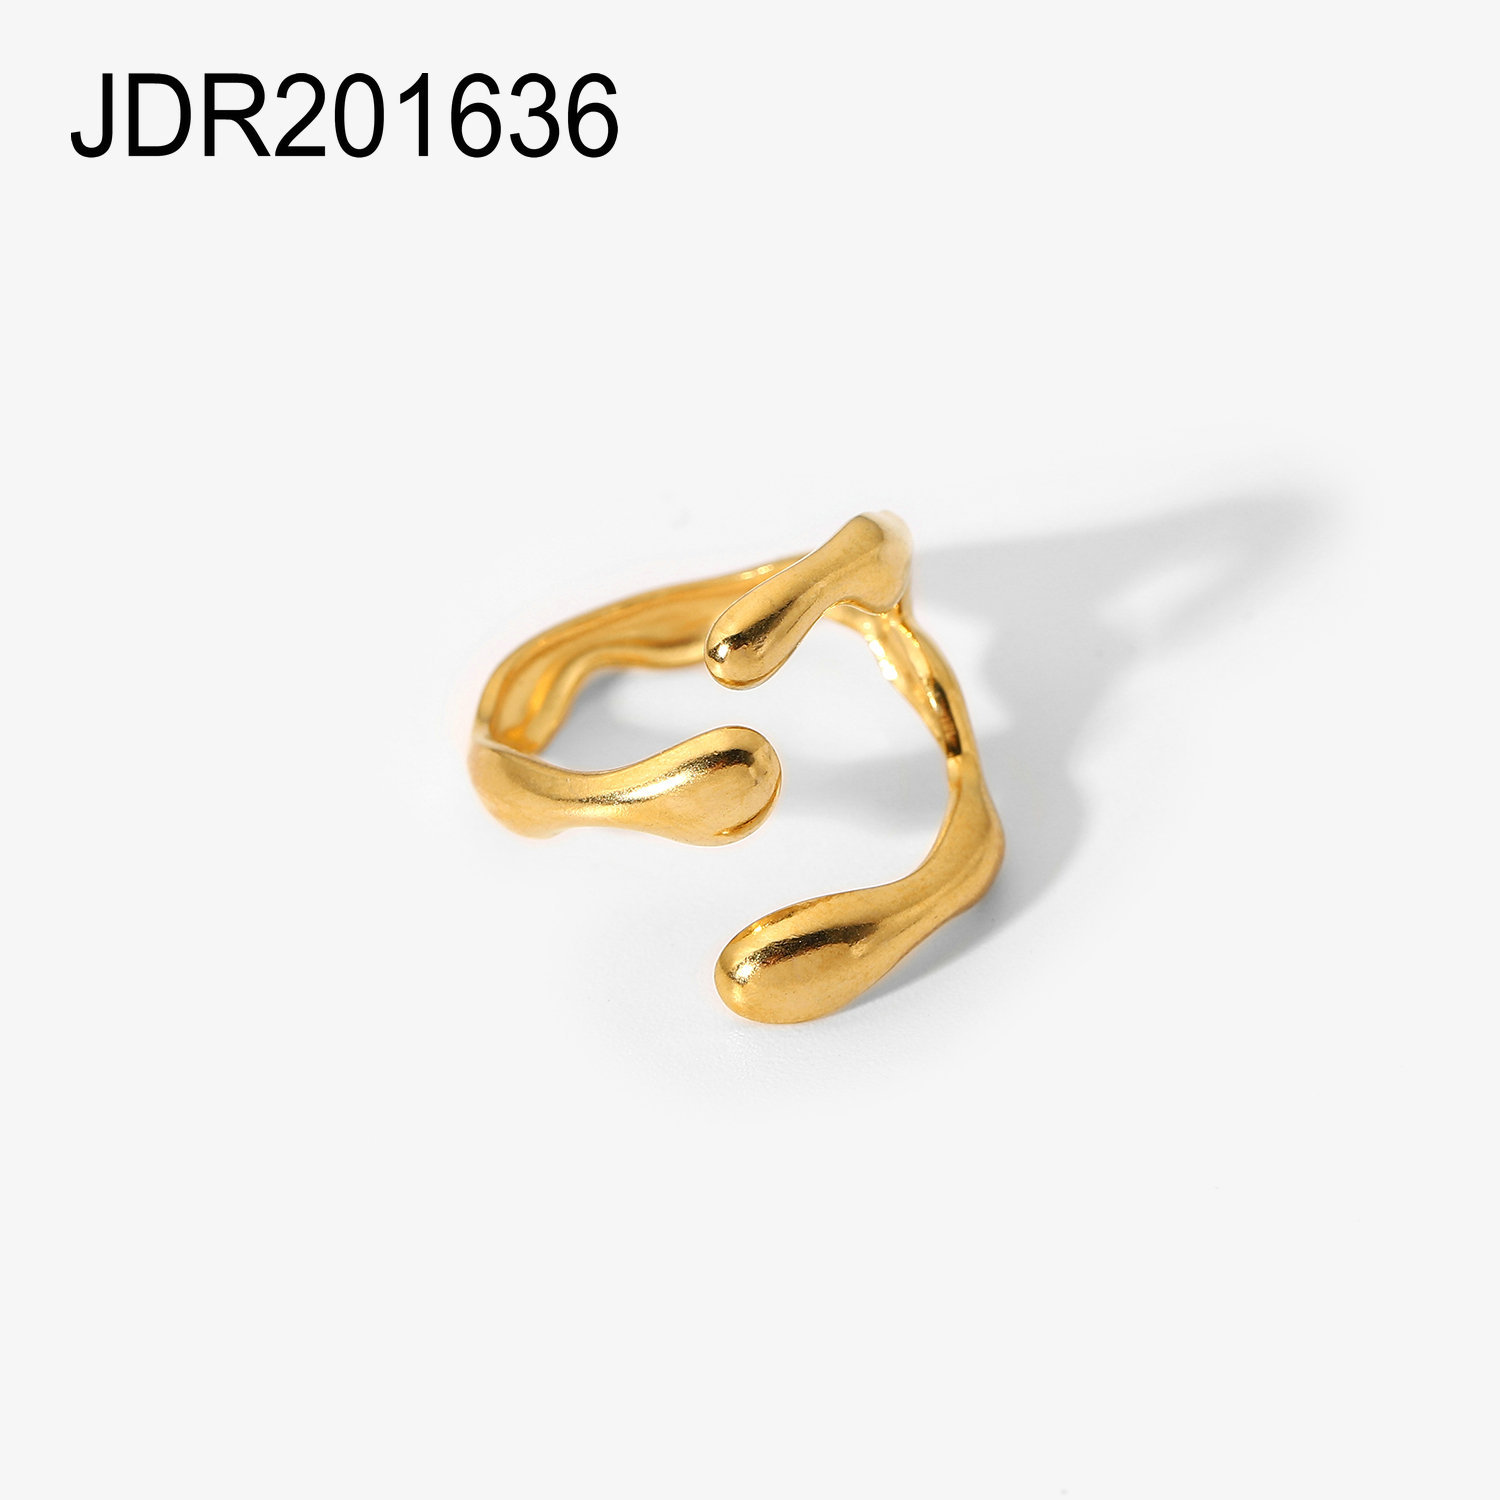 JDR201636